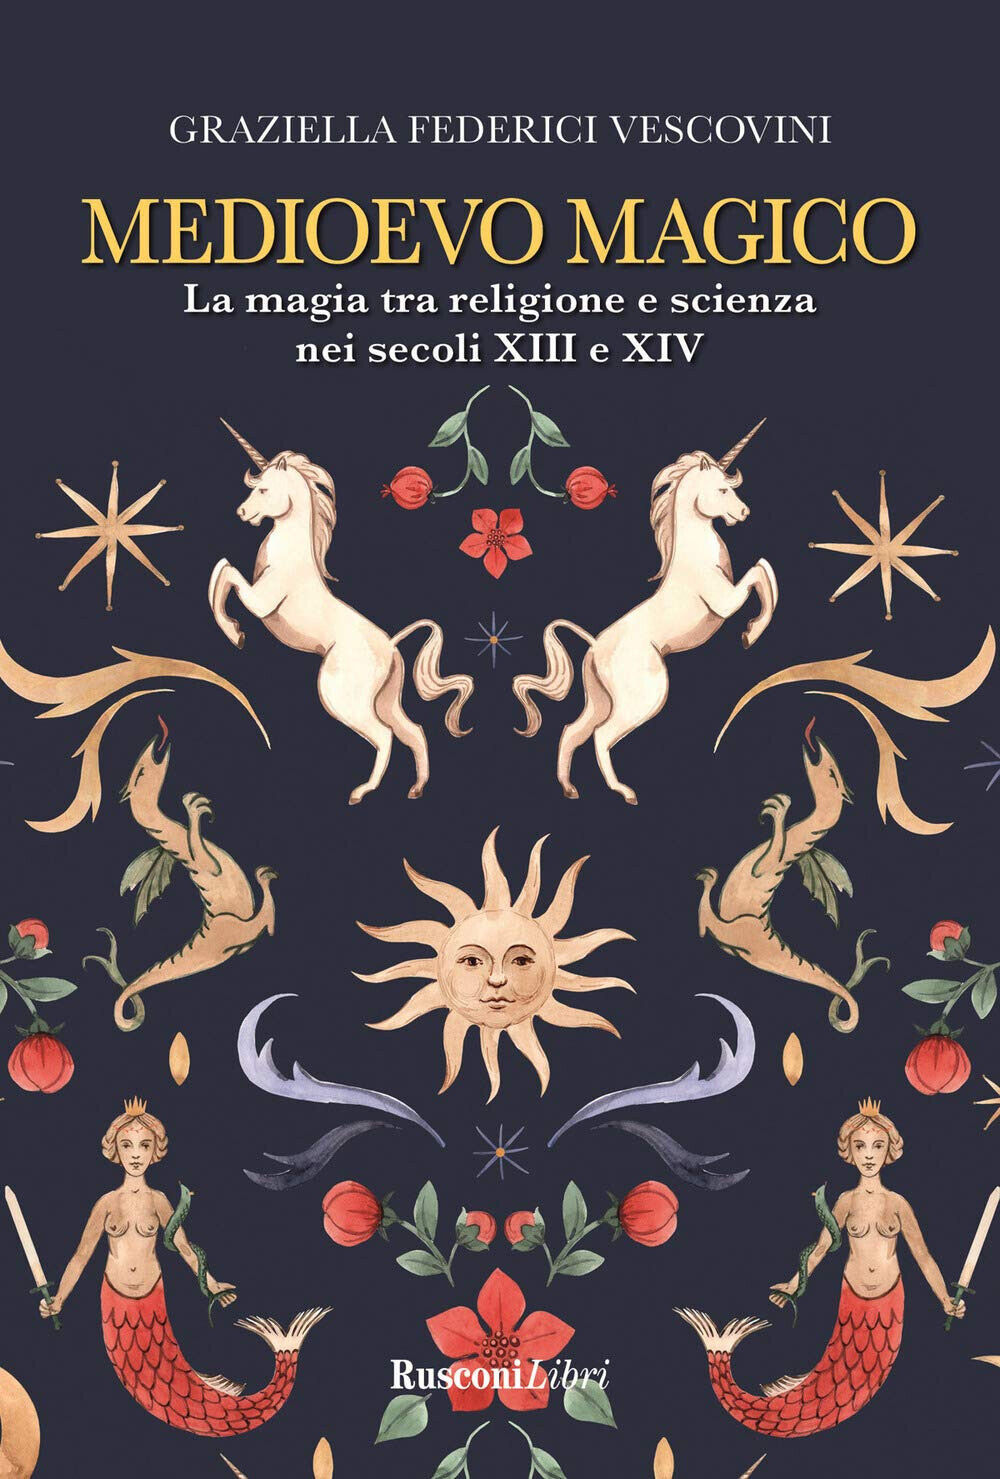 Medioevo magico - Graziella Federici Vescovini - Rusconi, 2021 libro usato